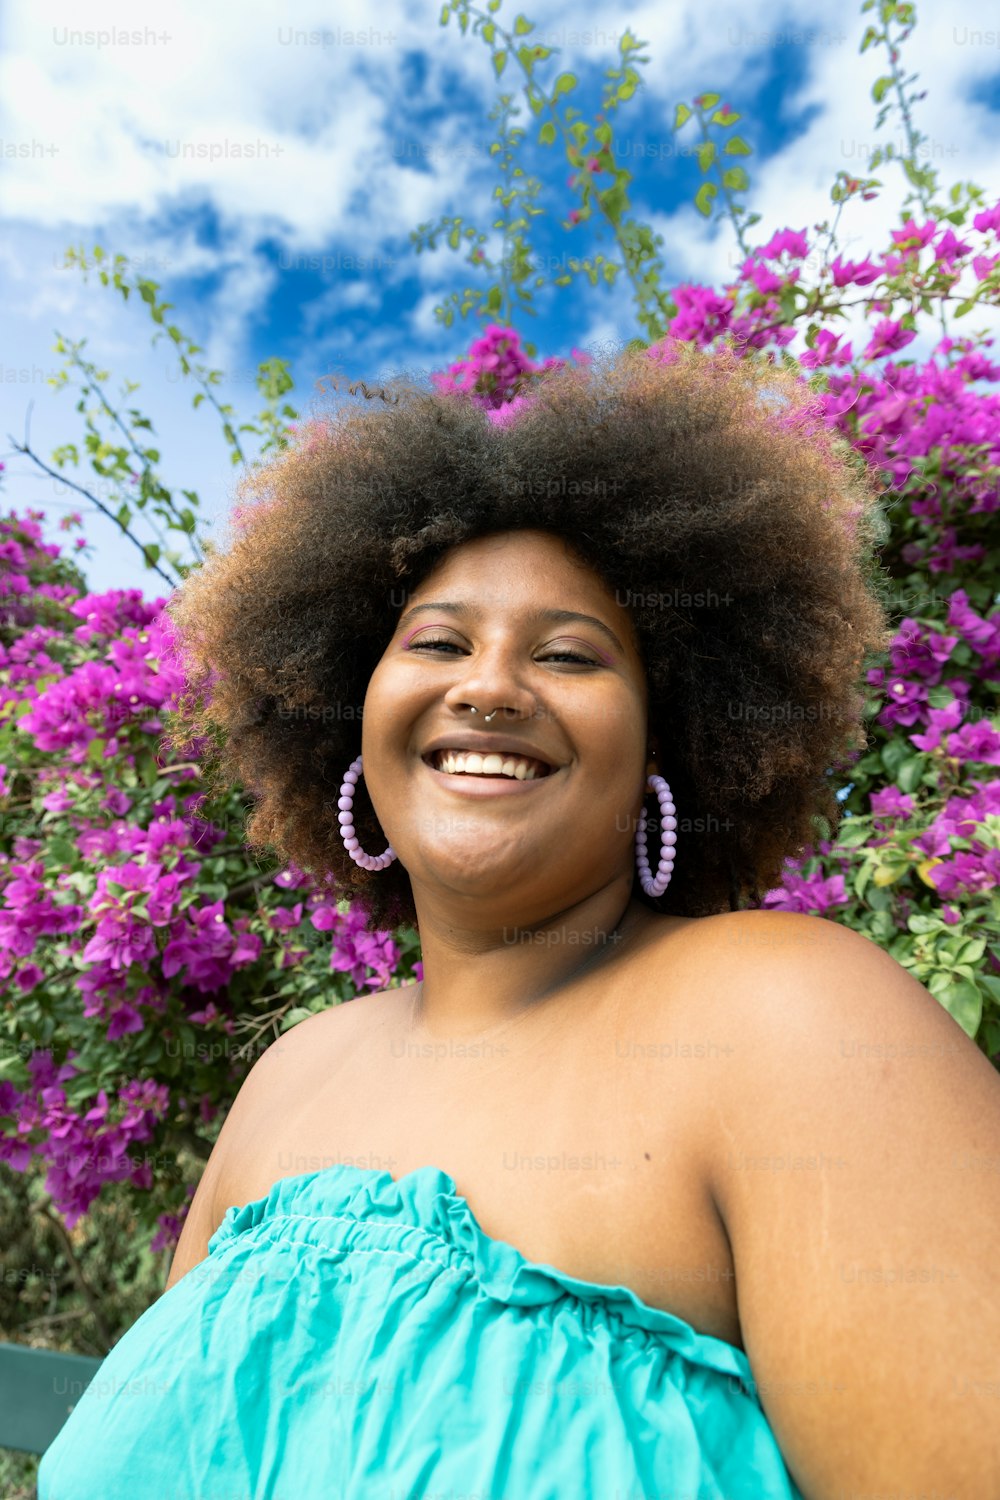 Una mujer con una sonrisa afro frente a flores moradas